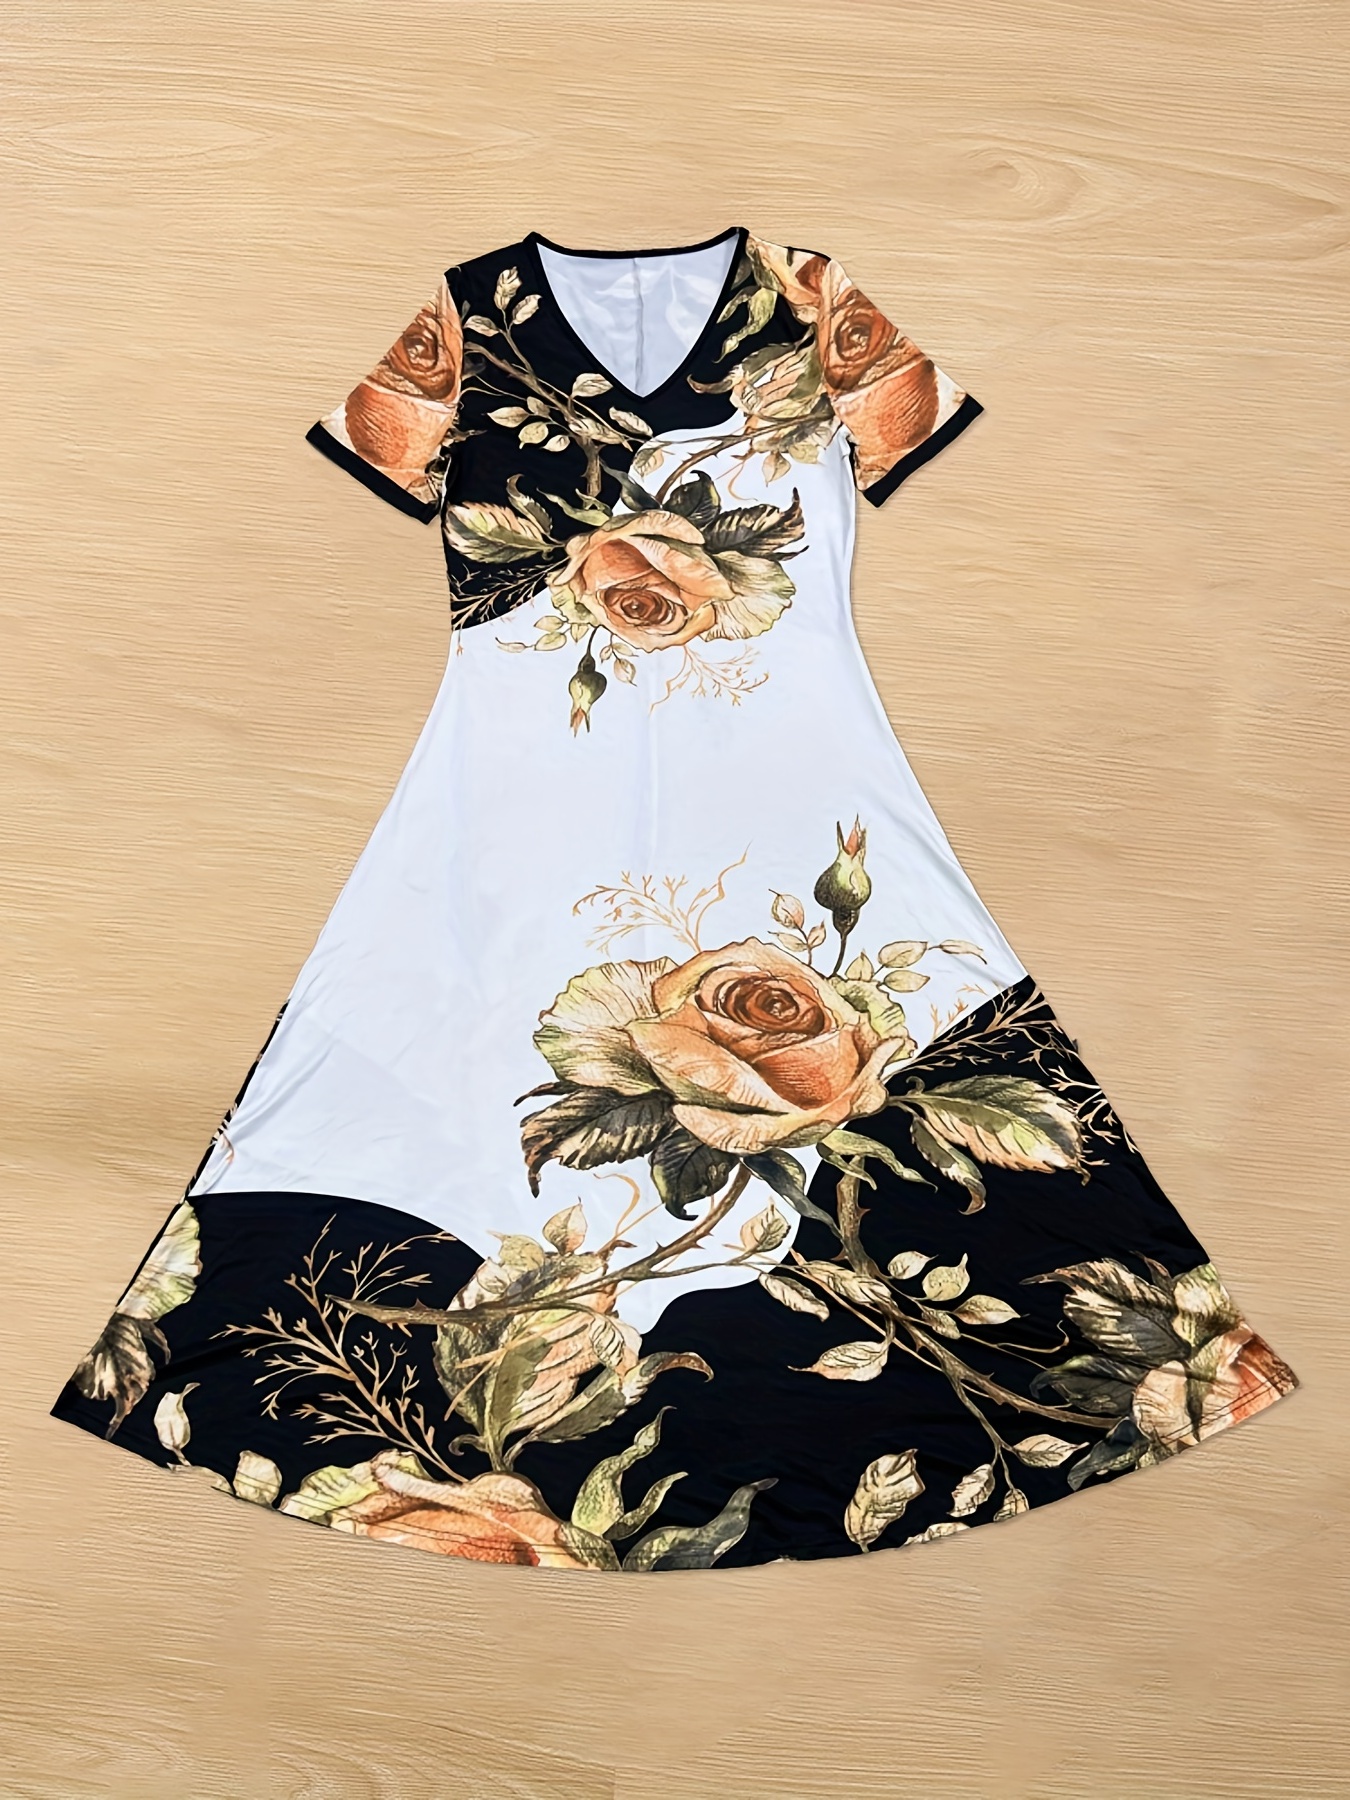 The Black V Neck Floral Short Sleeve Maxi Dress